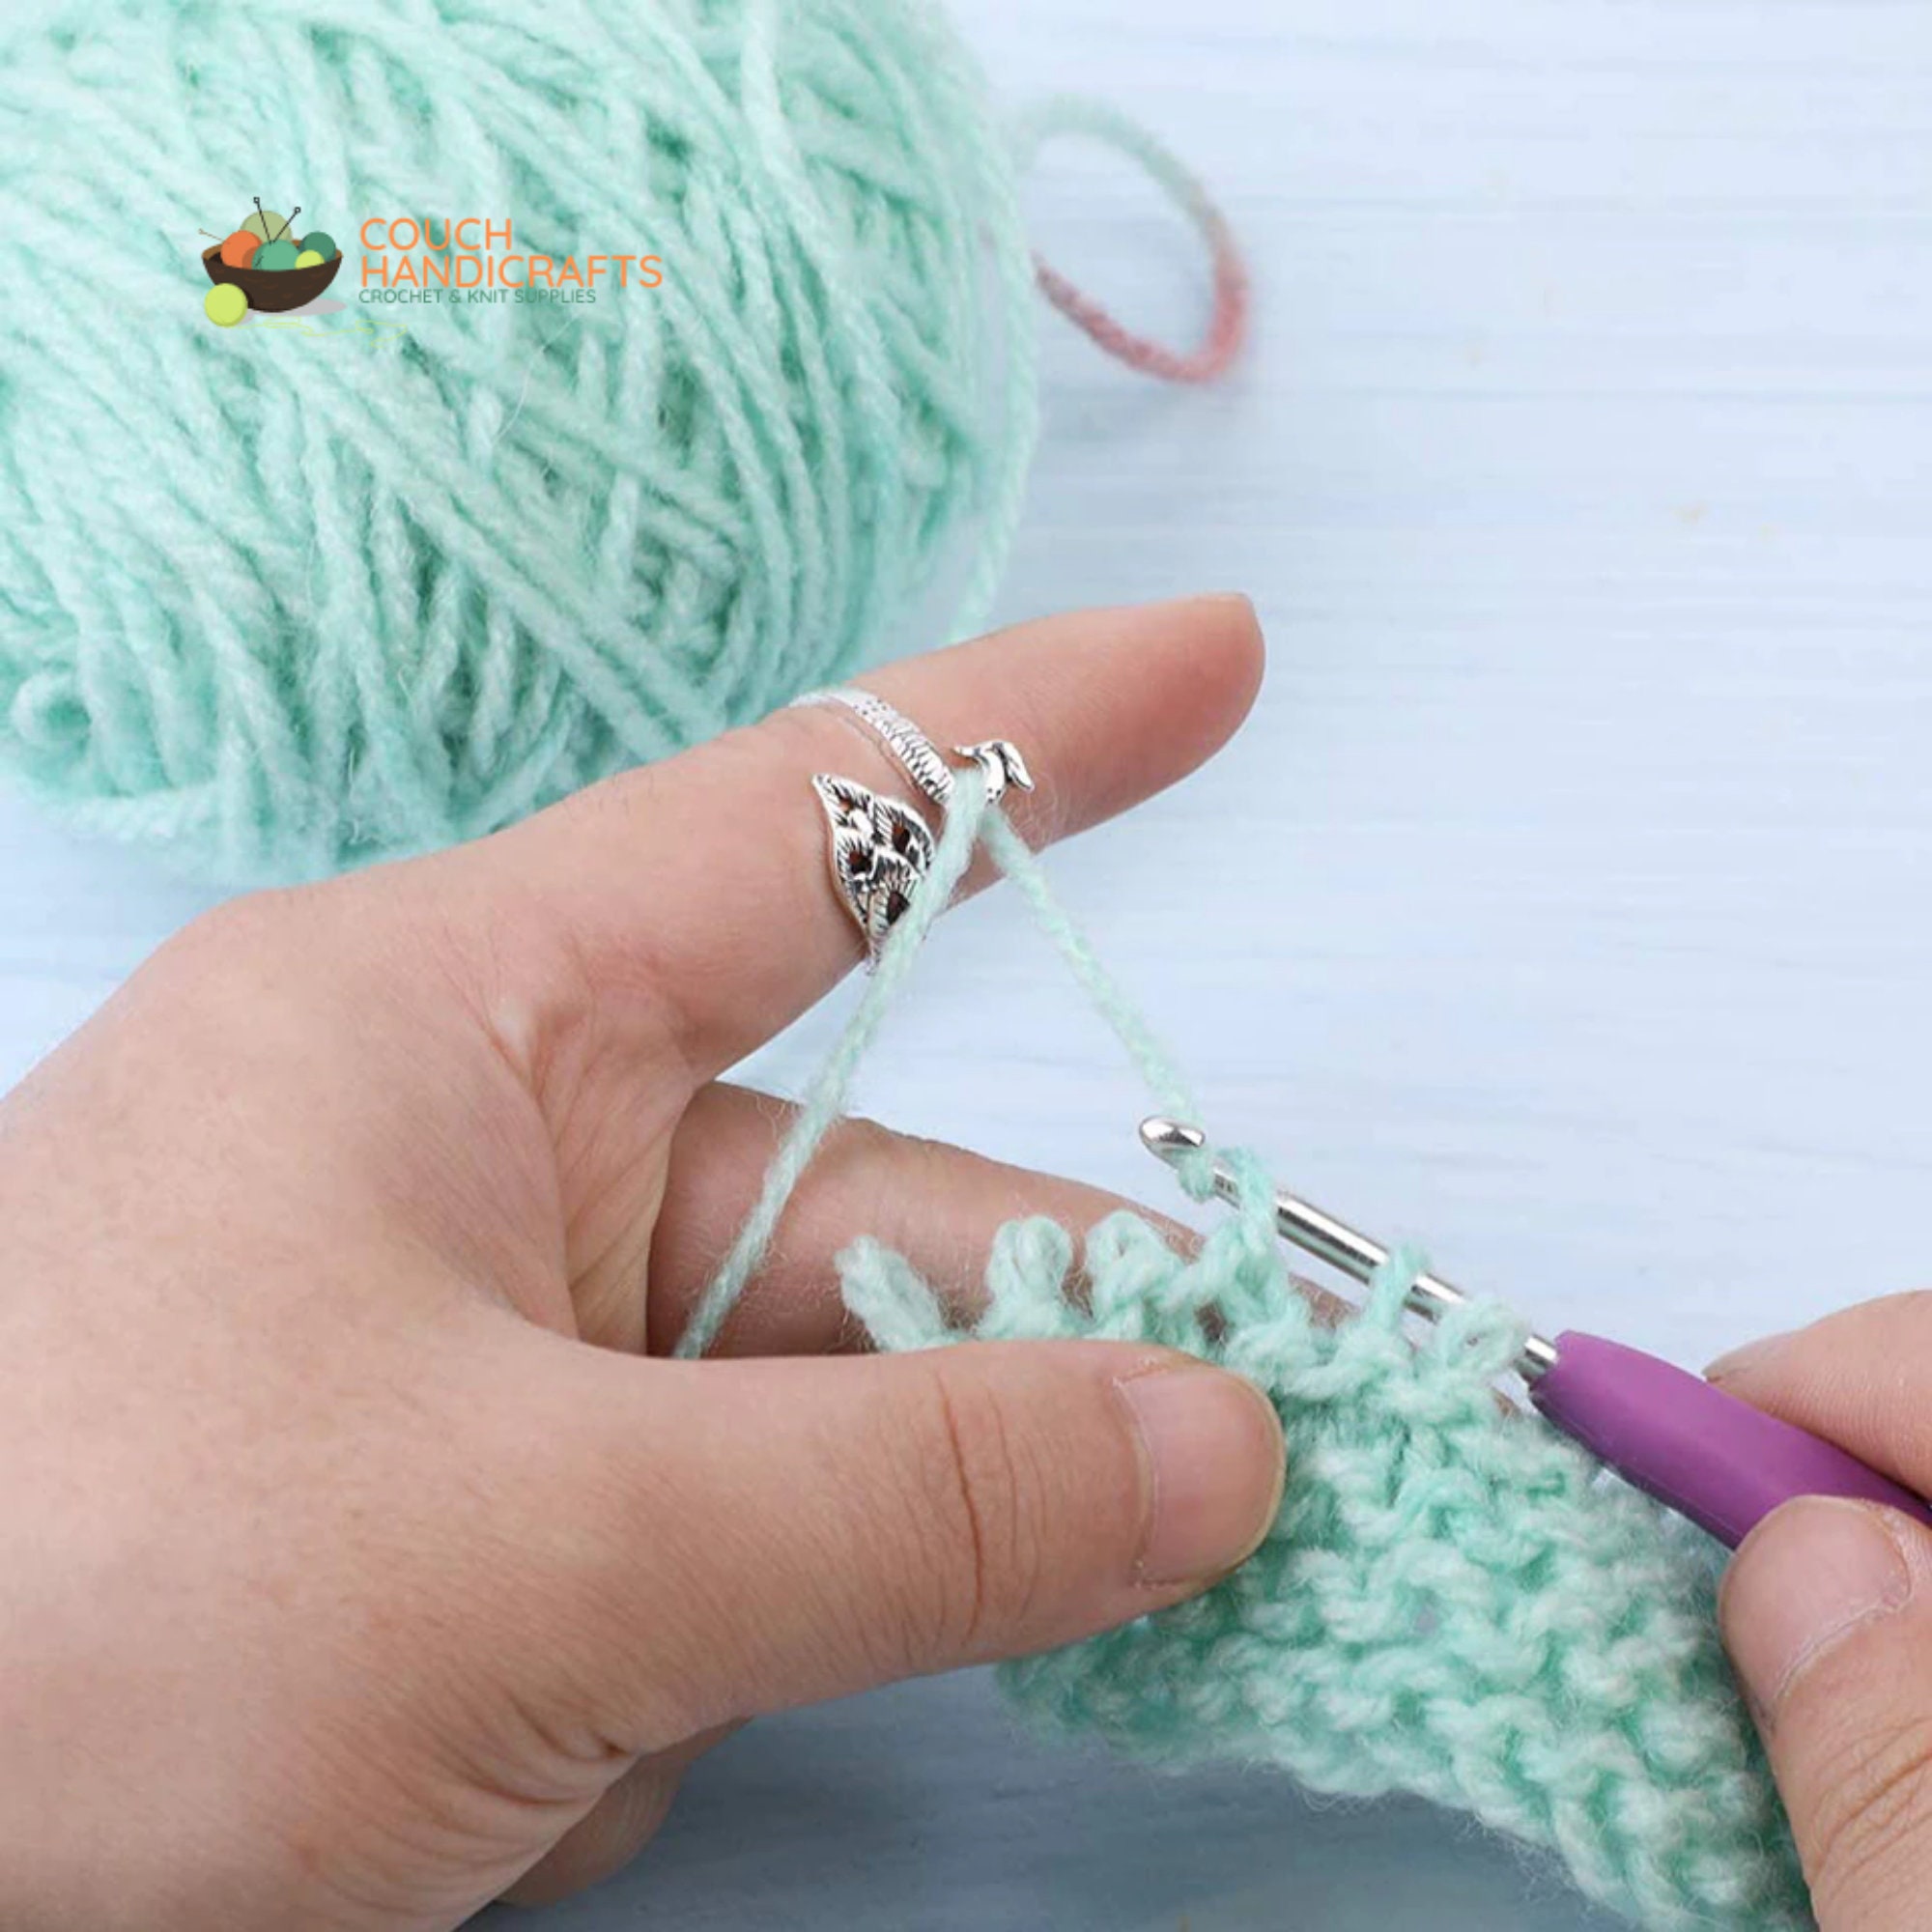 Adjustable Finger Crochet Multi Style Crochet Rings For Tension Knitting  Tool Knitting Crocheting Gift Yarn Guide